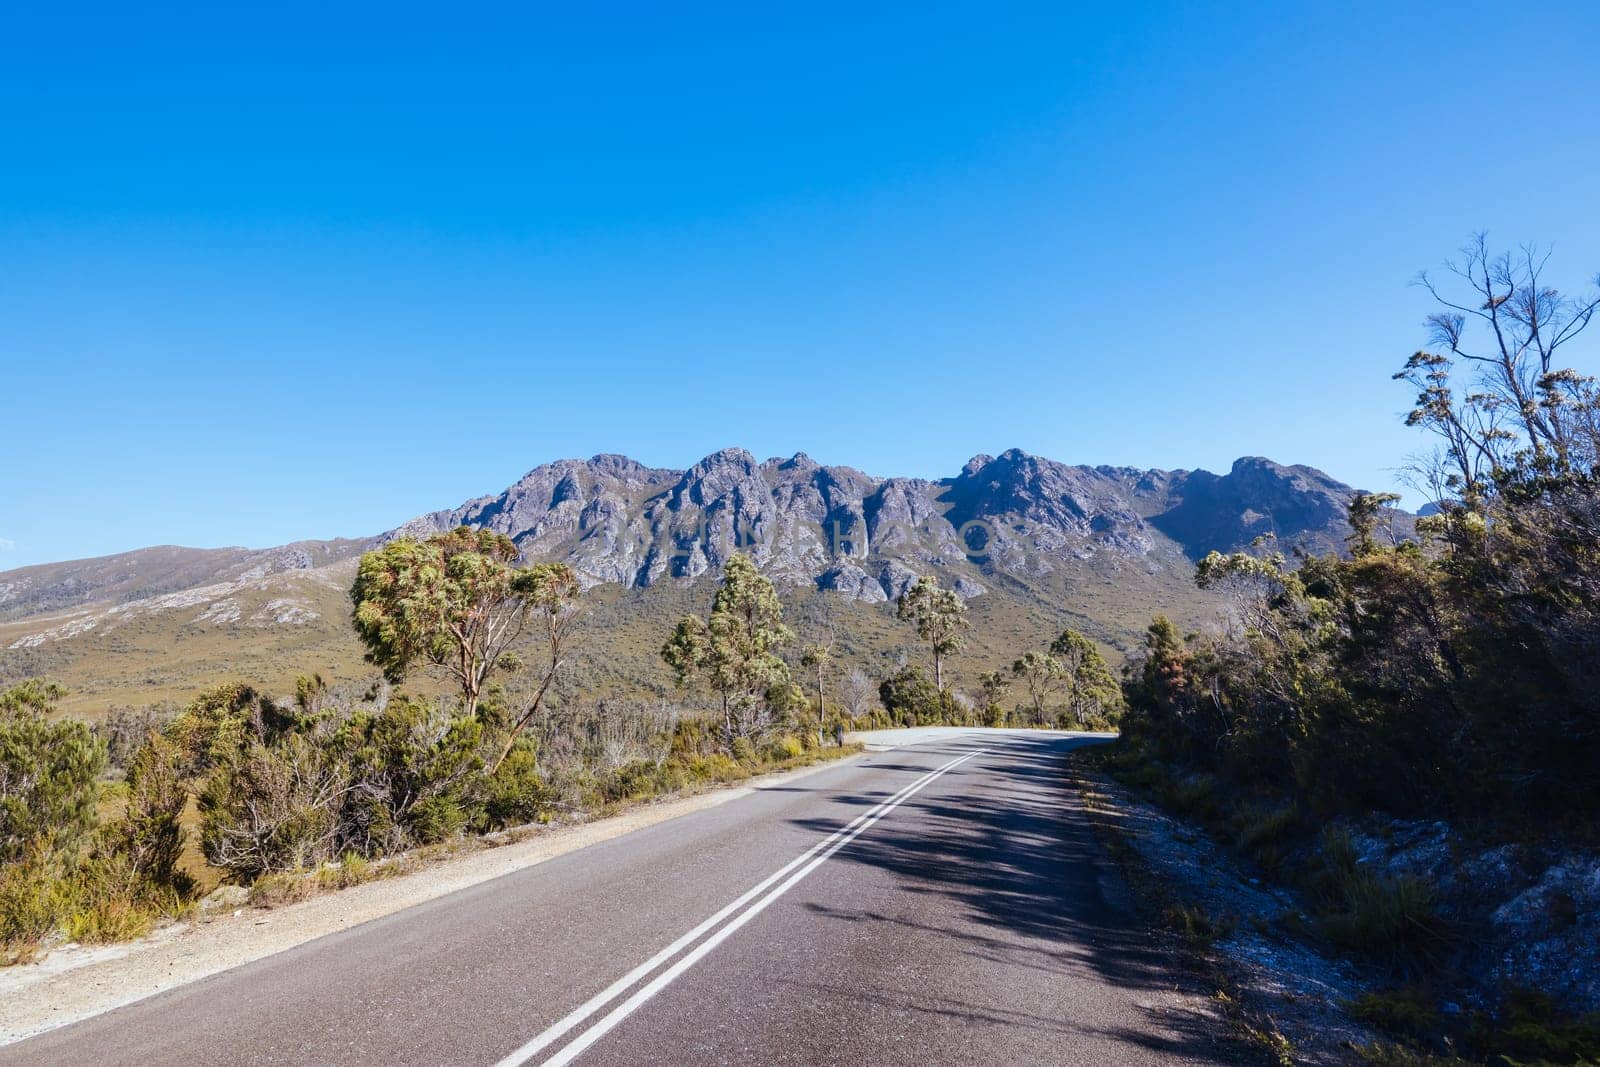 Gordon River Road Landscape in Tasmania Australia by FiledIMAGE